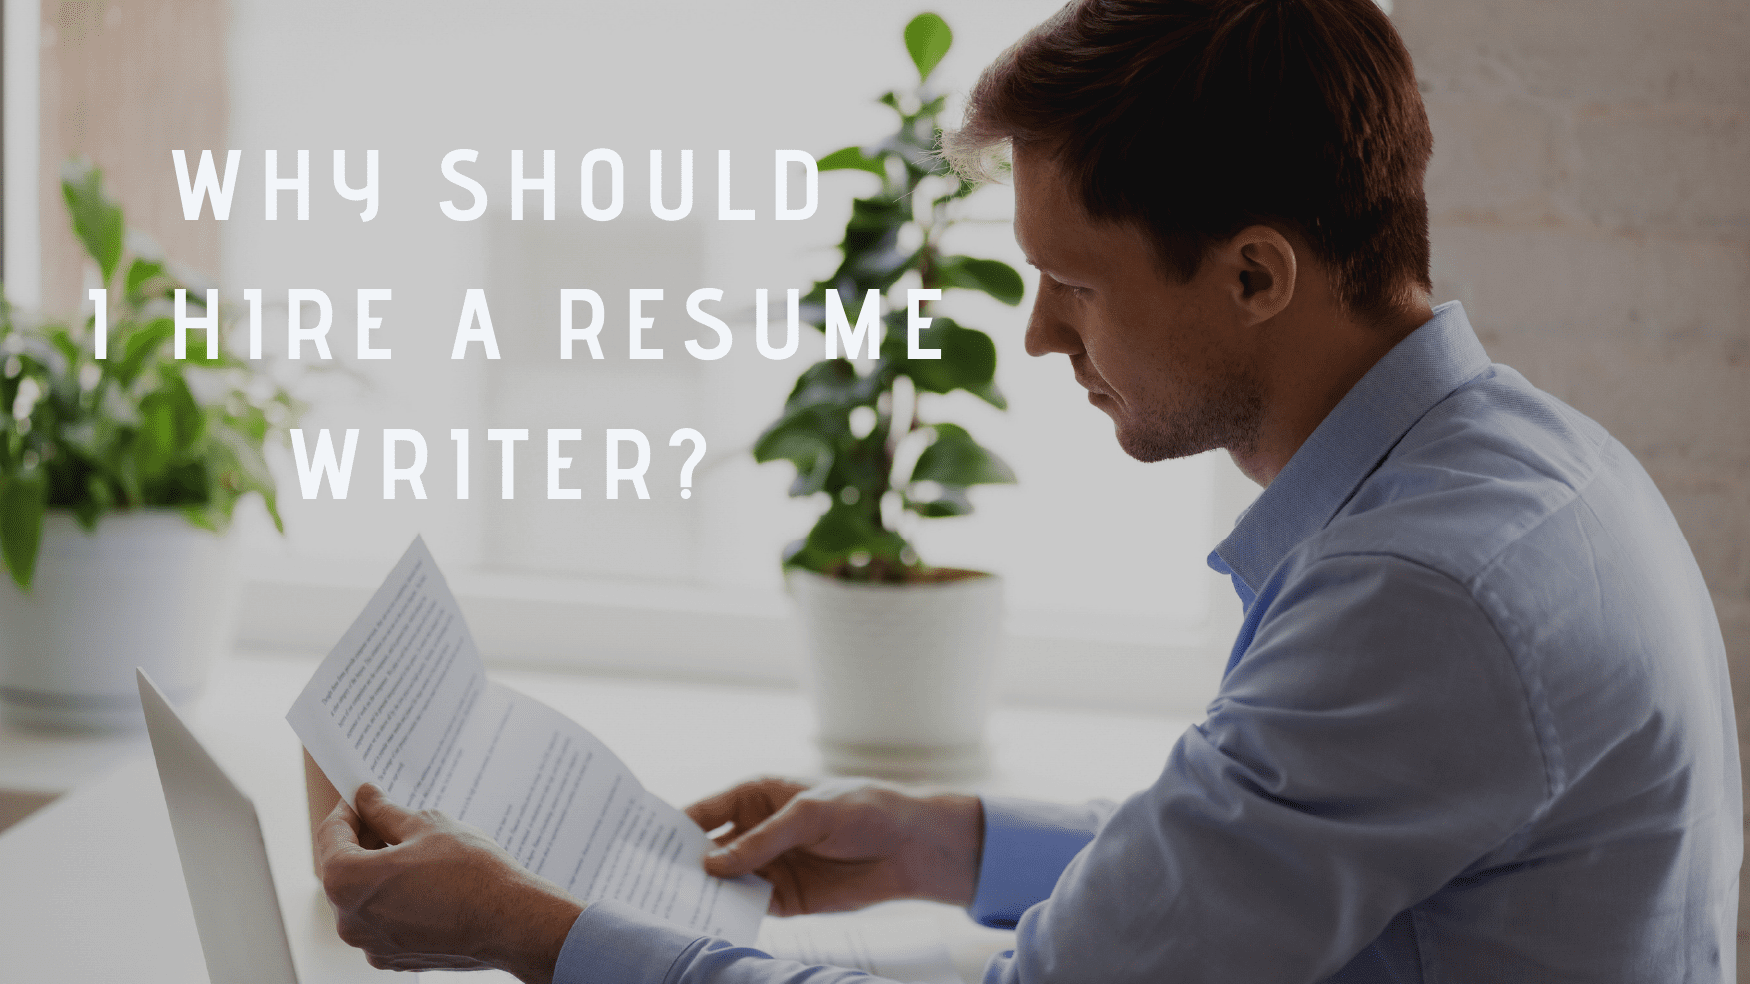 resume writer job hiring